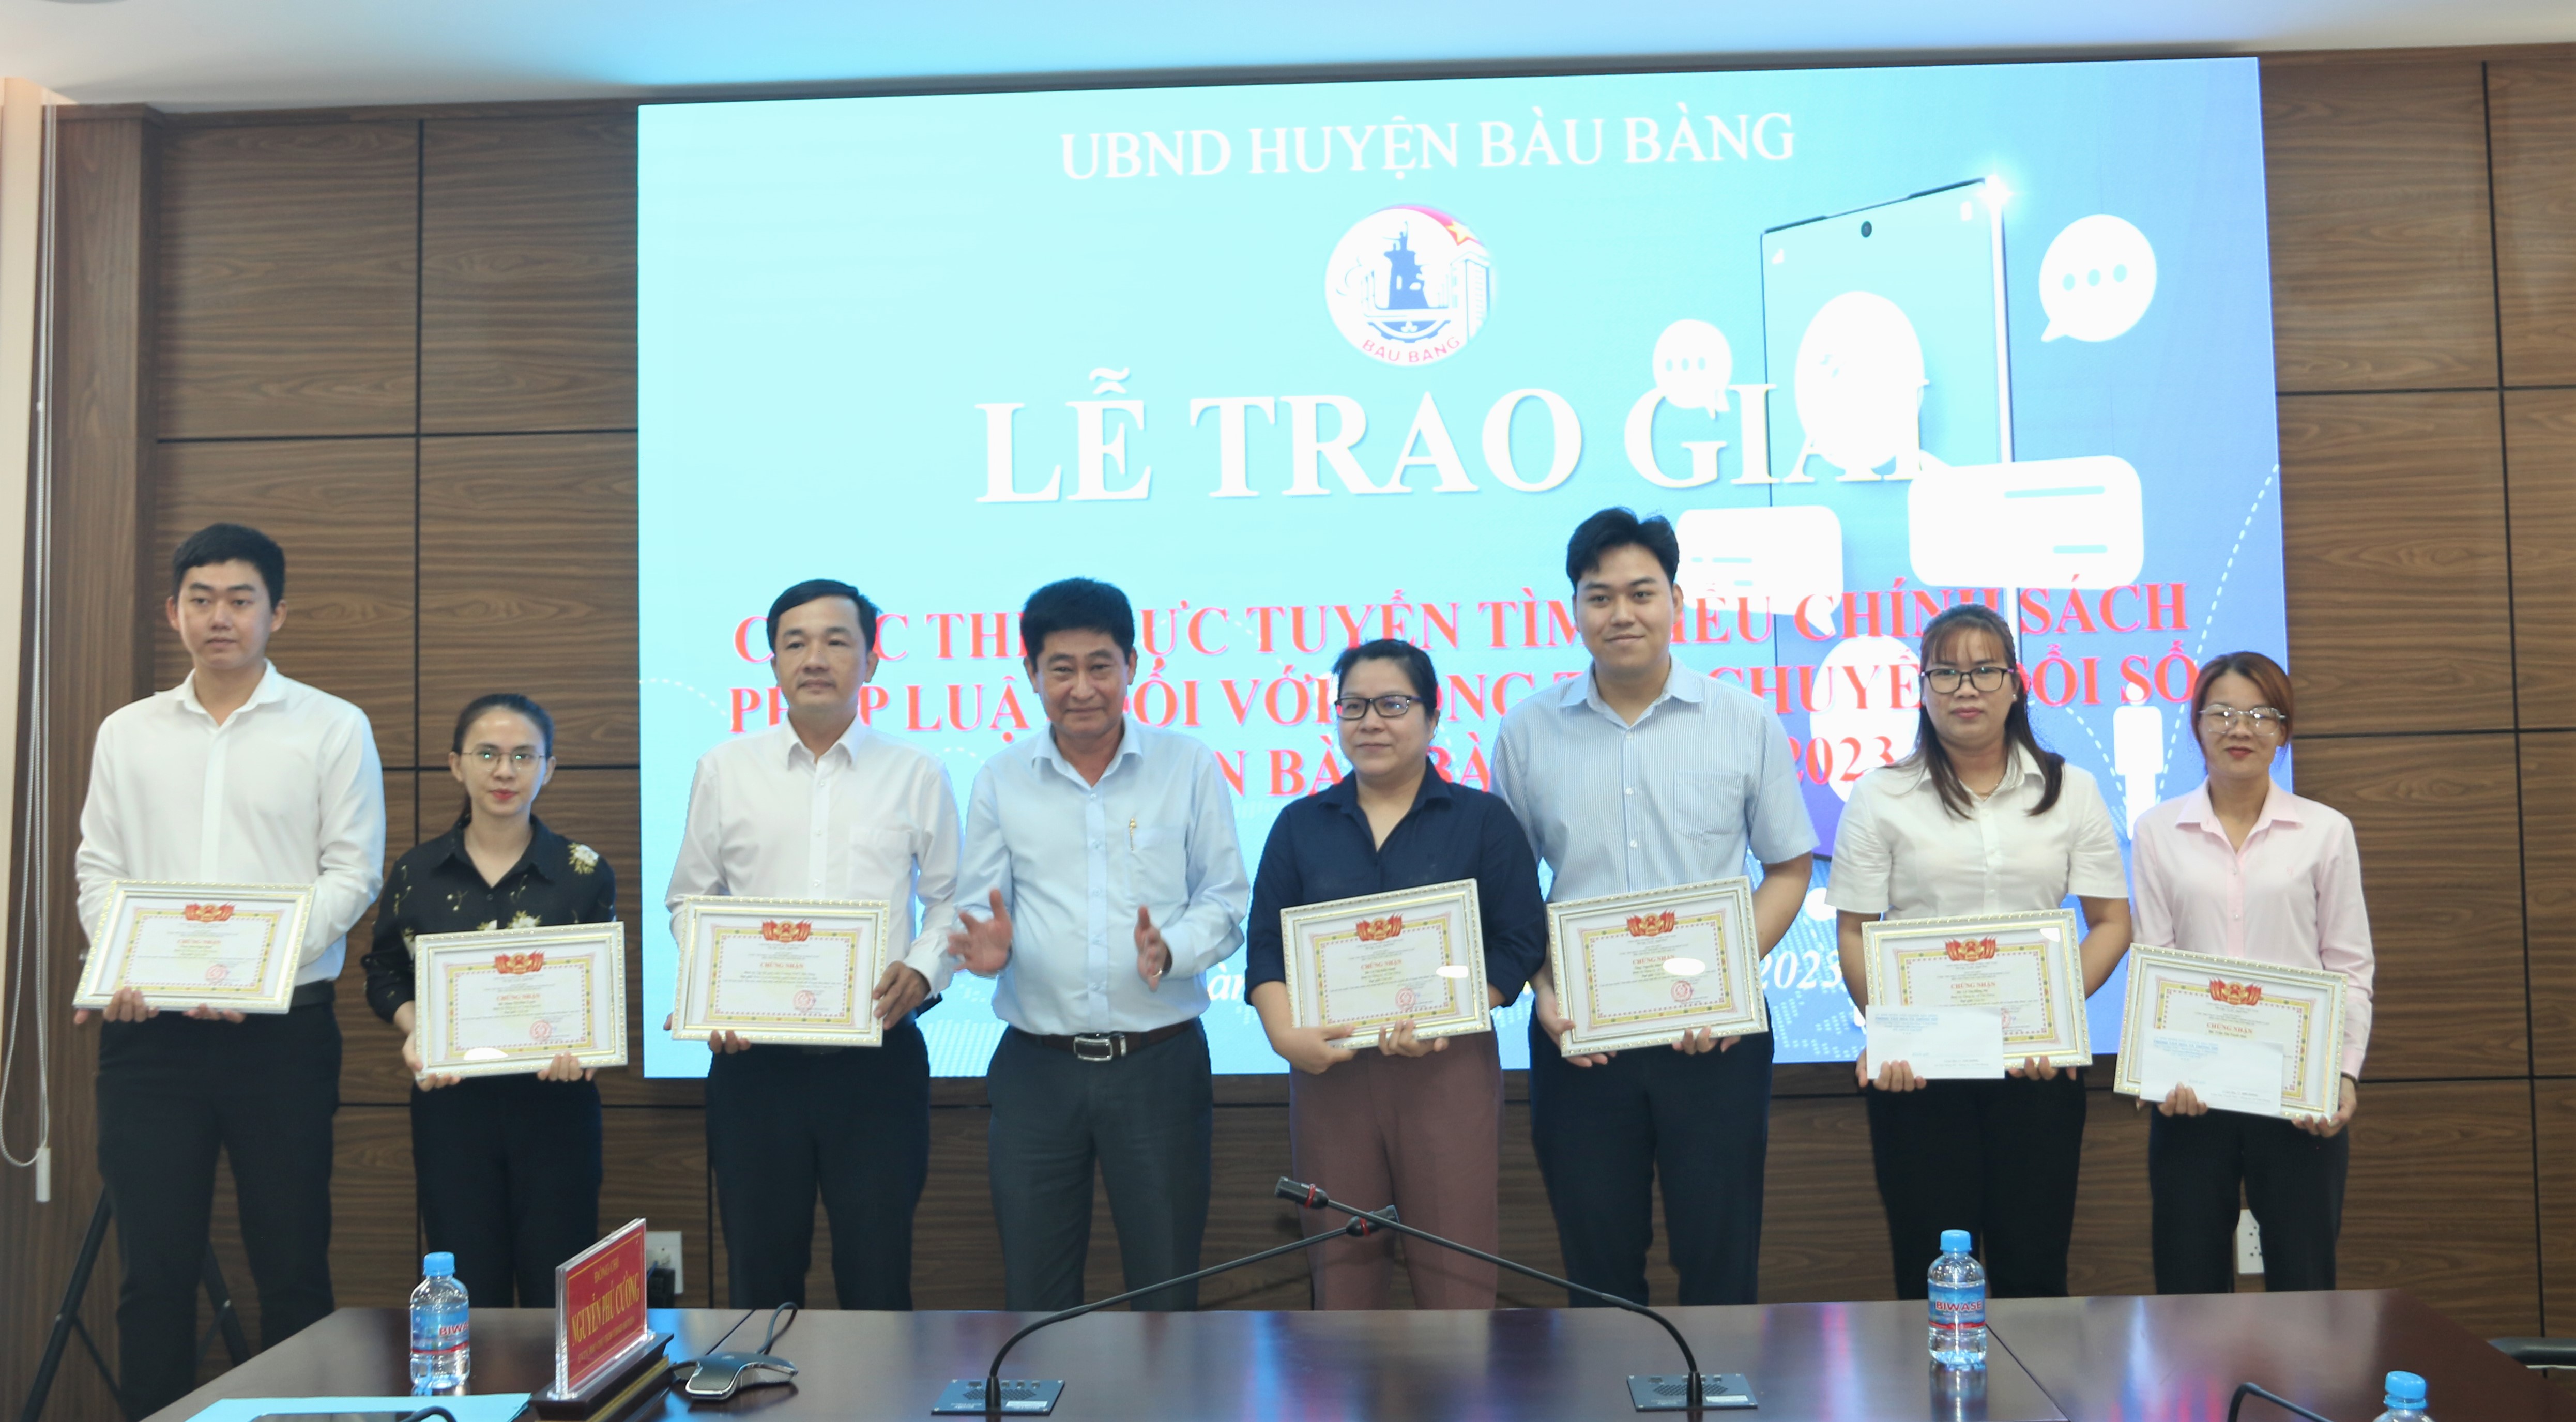 Huyện Bàu Bàng tổ chức lễ trao giải cuộc thi trực tuyến tìm hiểu chính sách, pháp luật đối với công tác chuyển đổi số năm 2023